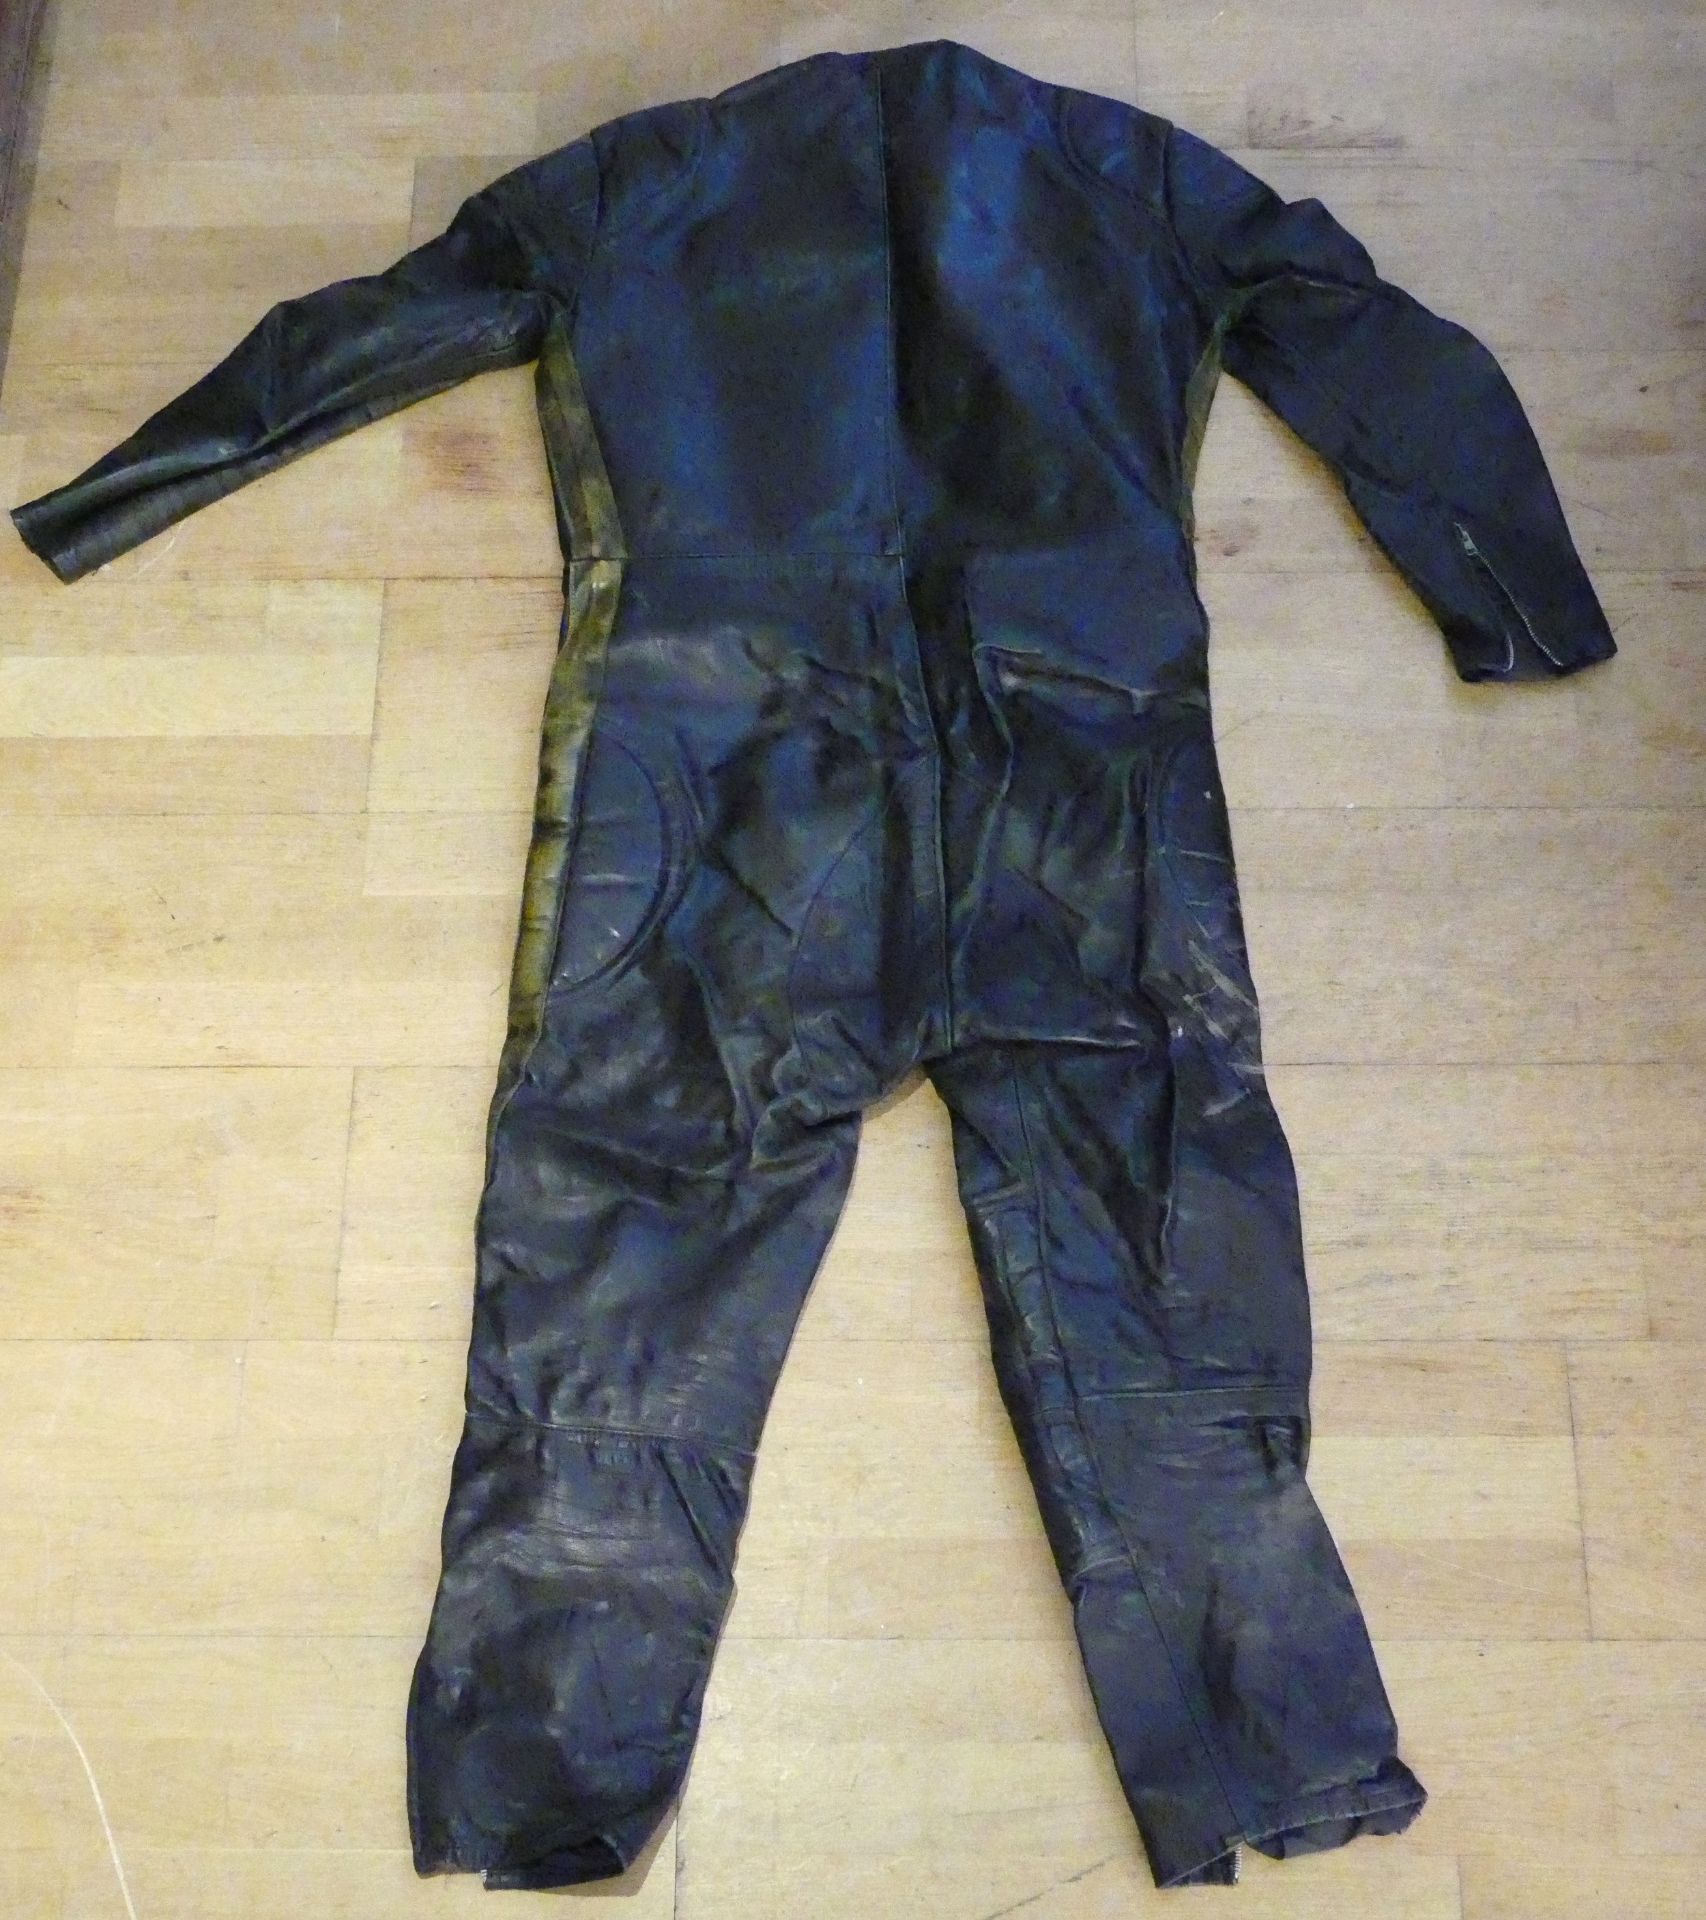 A 'Waddington' black leather set of motorcycle leathers, 143cm long - Image 2 of 3